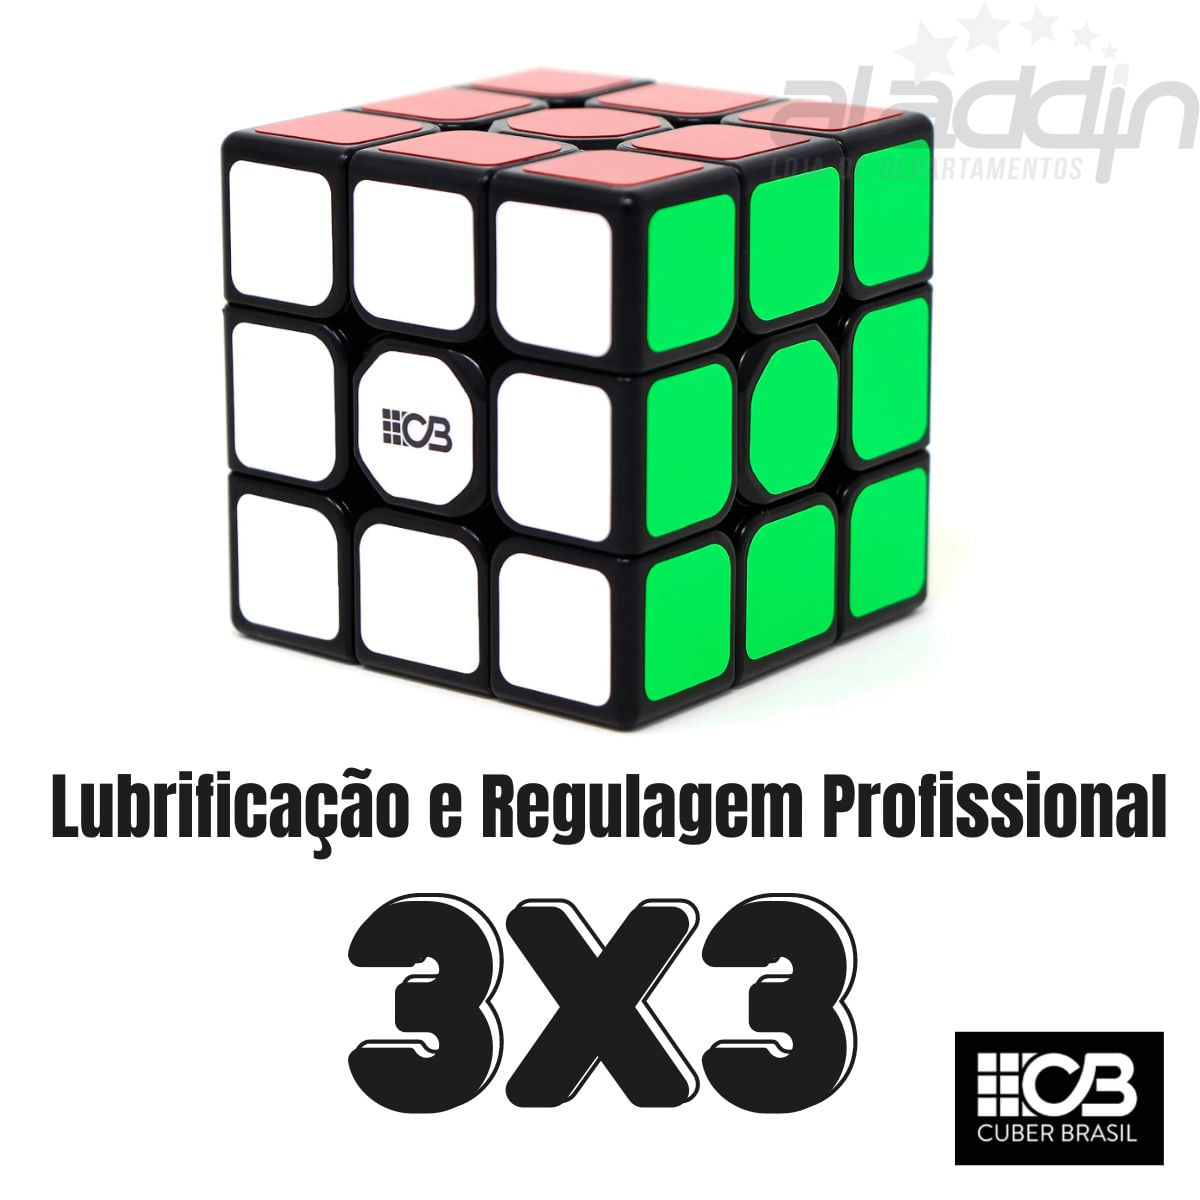 Jogo - Cubo Mágico - Mirror Blocks - 3x3 - Demolidor Cubos - Ri Happy